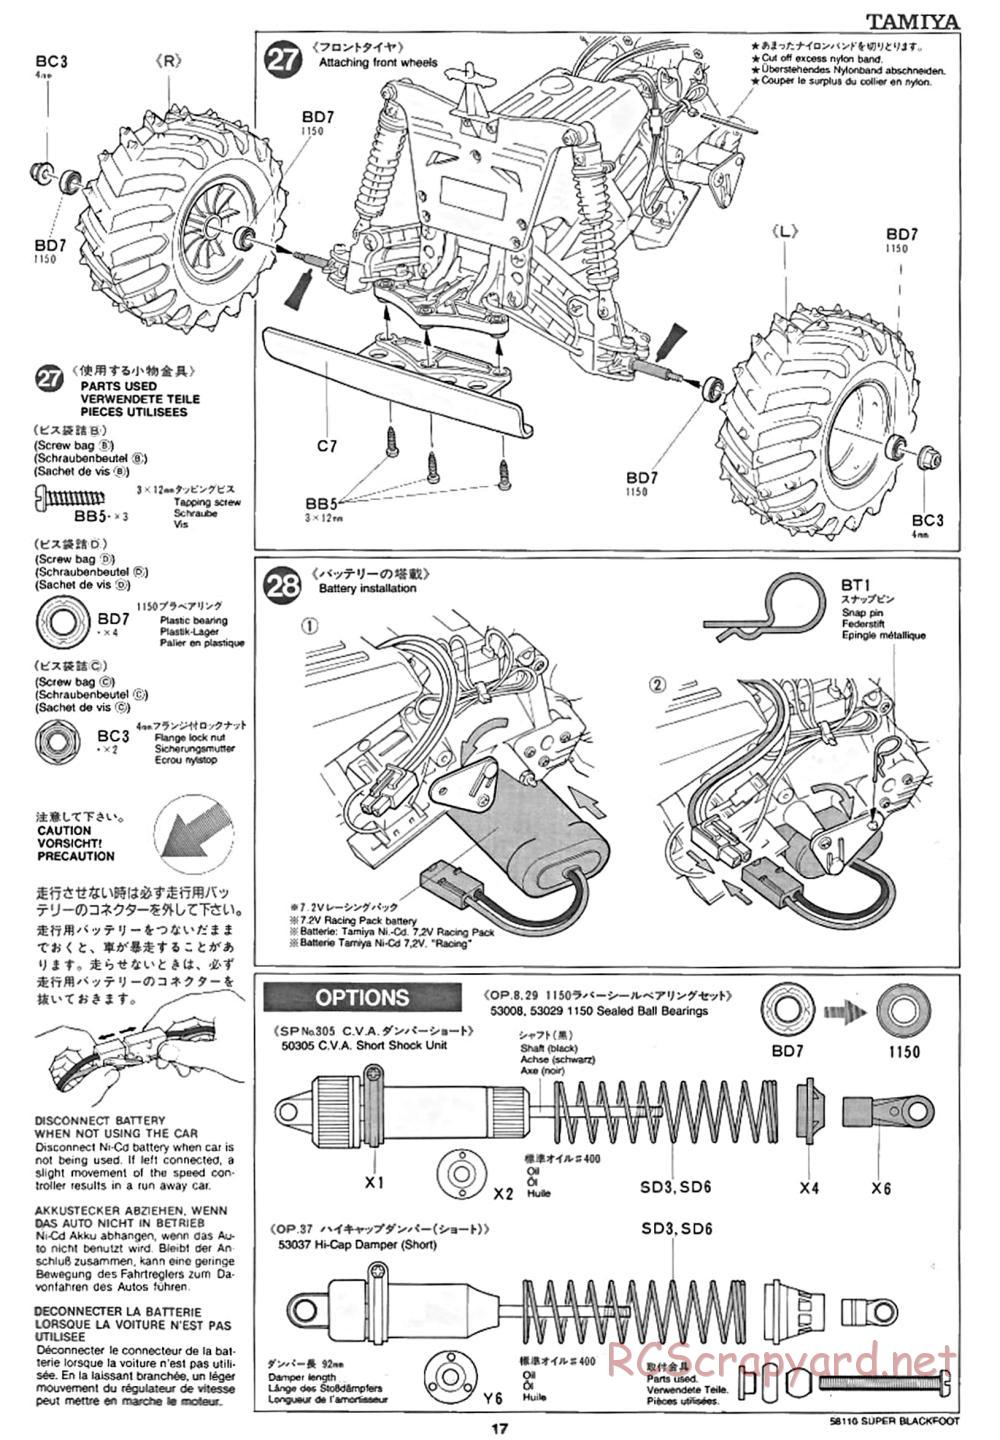 Tamiya - Super Blackfoot Chassis - Manual - Page 17